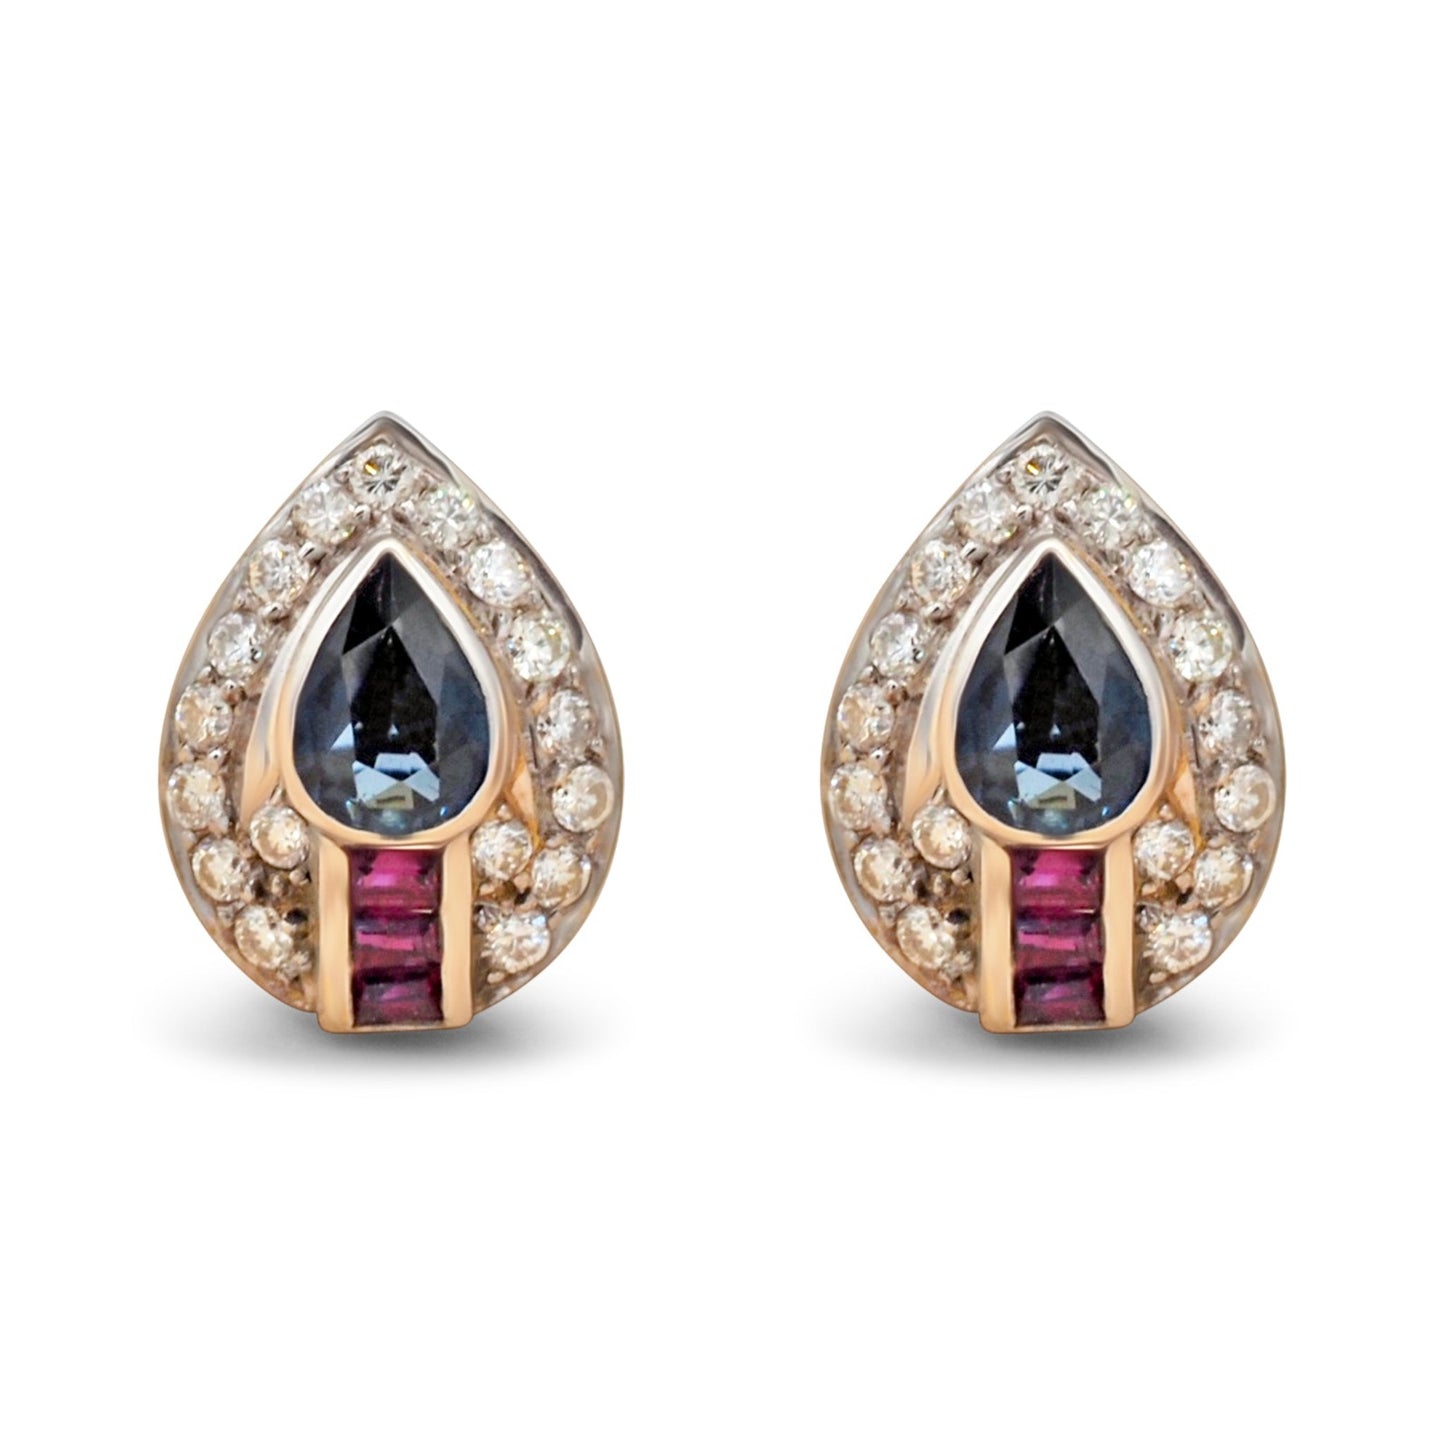 Pear sapphire diamonds earrings